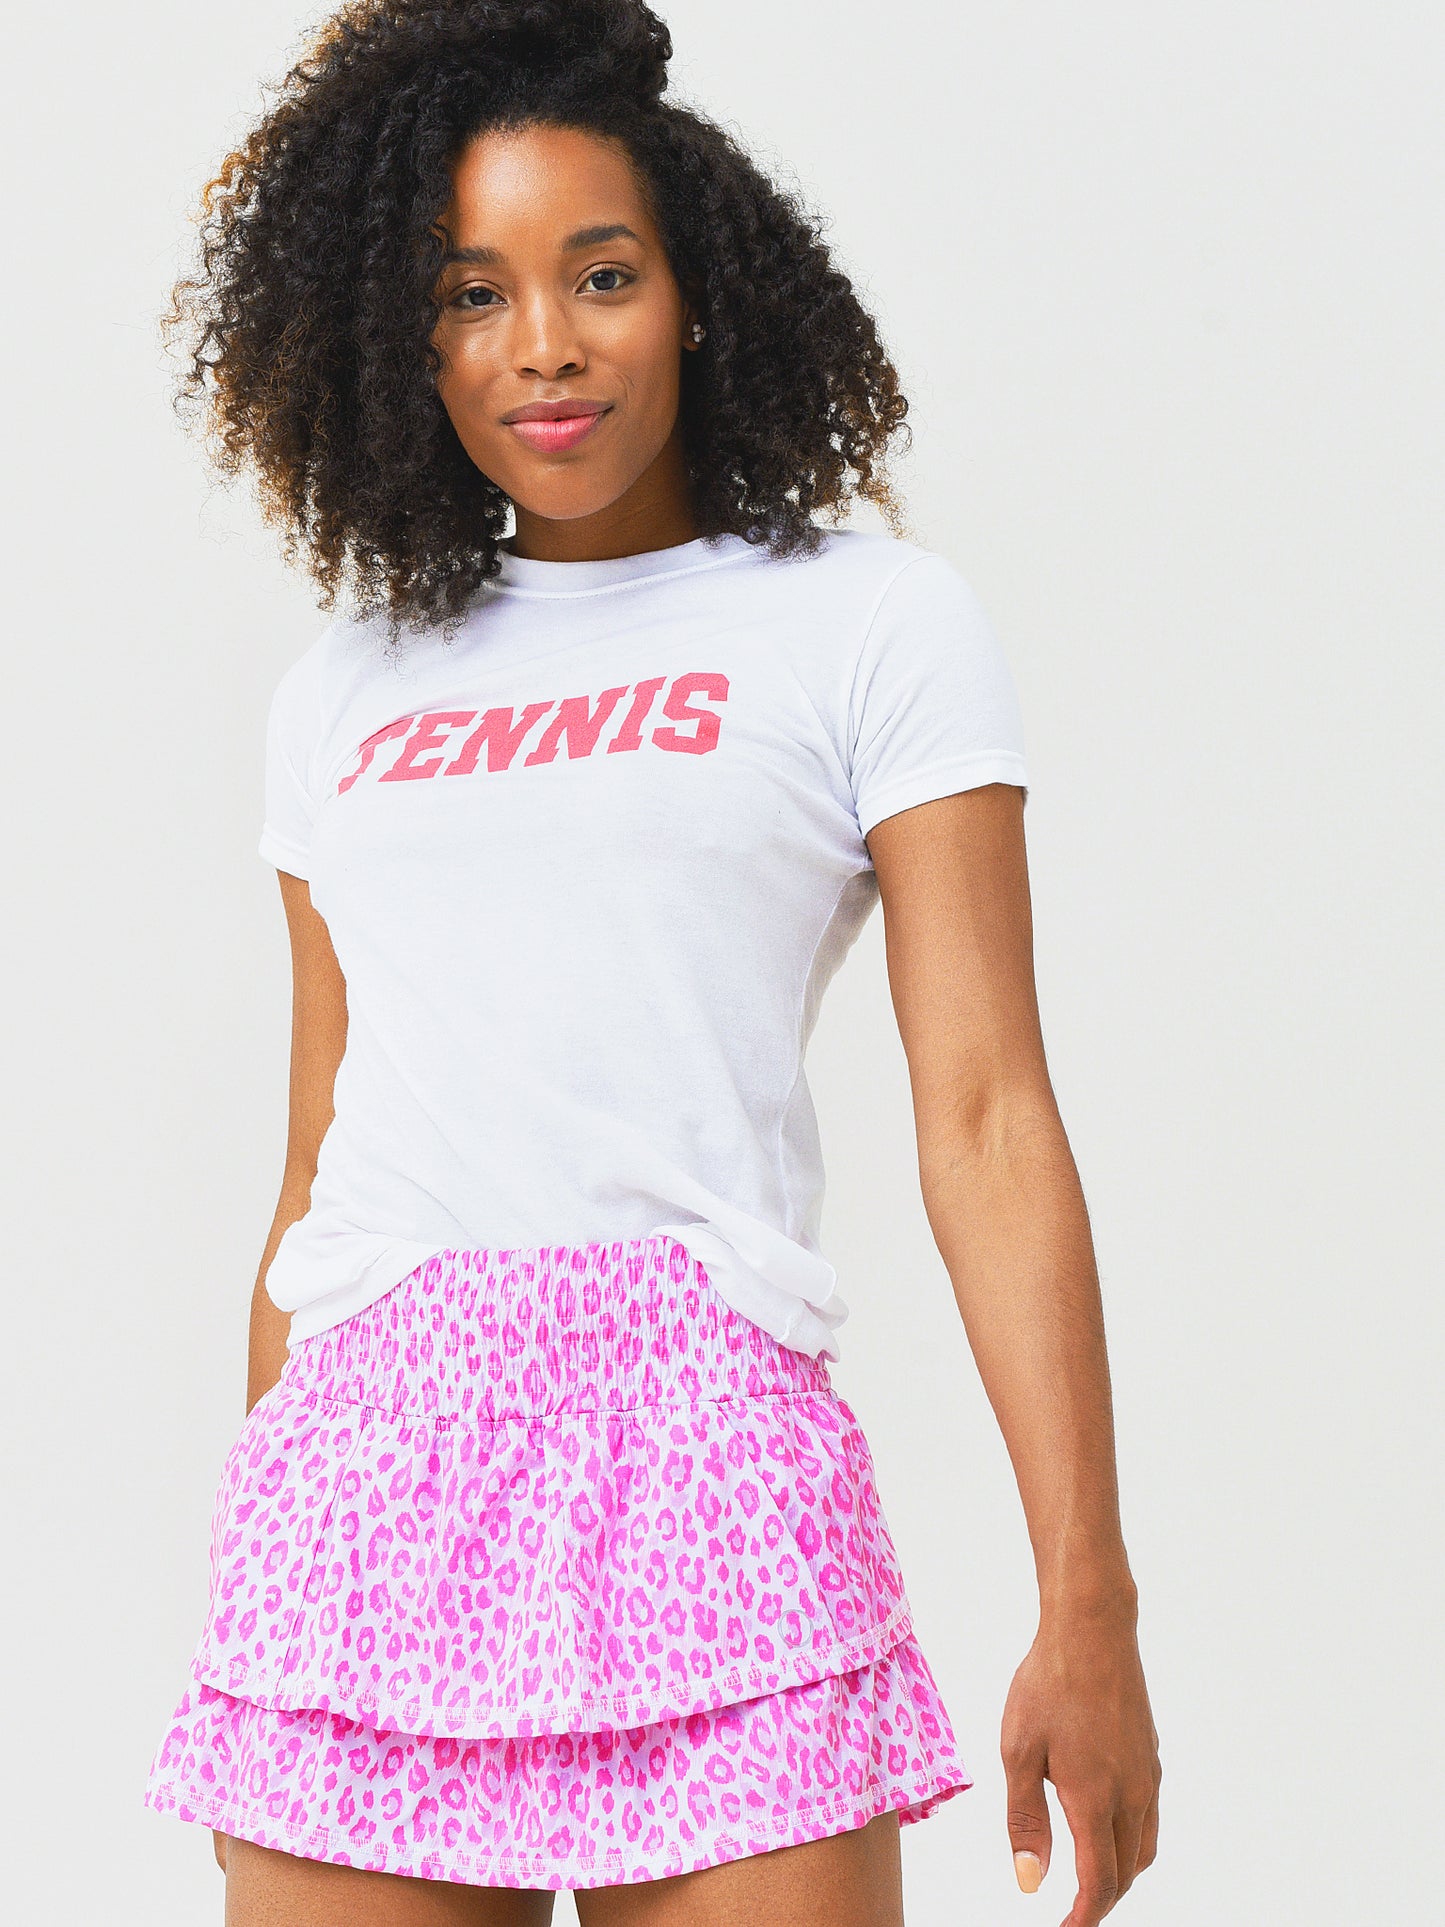 The Bubble Women's Tennis T-Shirt